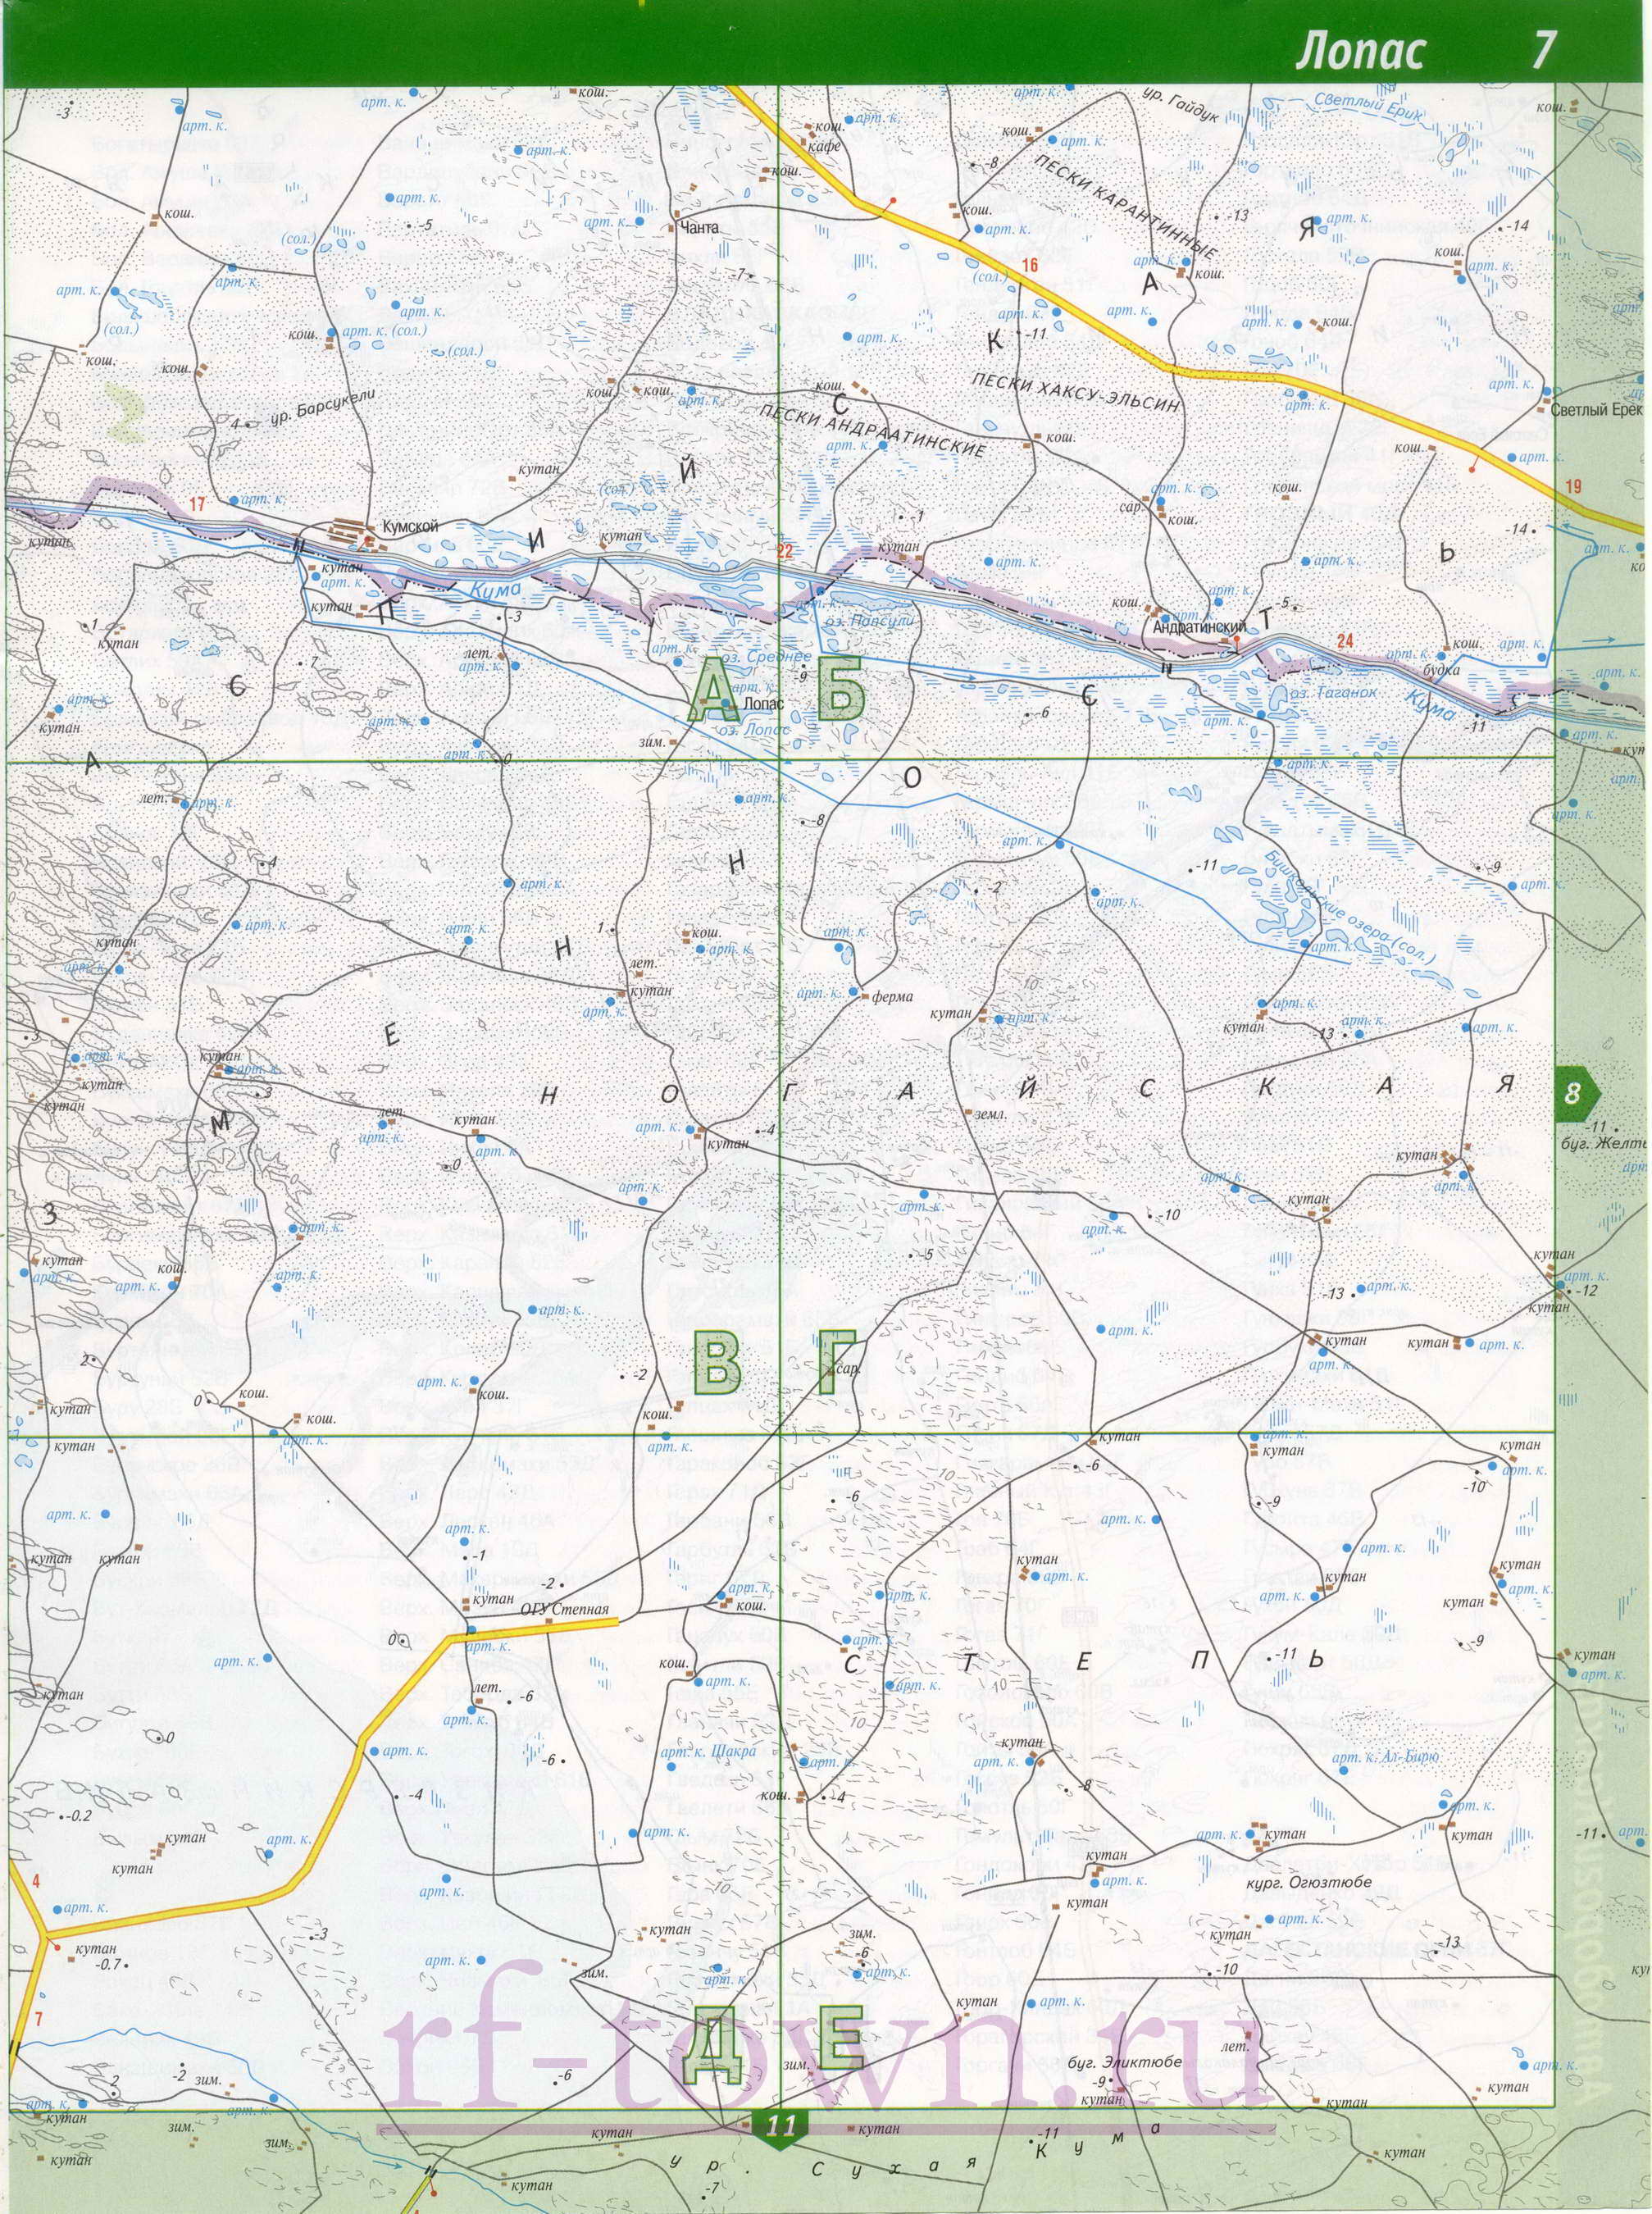 Карта Ногайского района Дагестана. Подробная топографическая карта - Ногайский район Дагестана, C0 - 